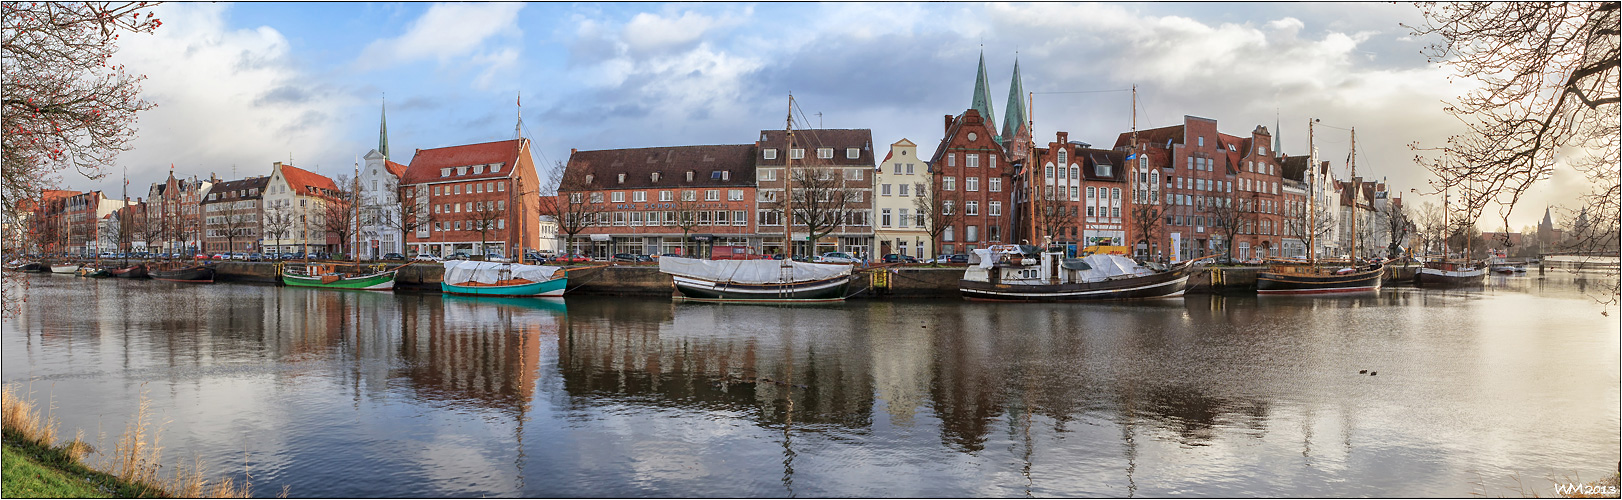 - Lübeck -